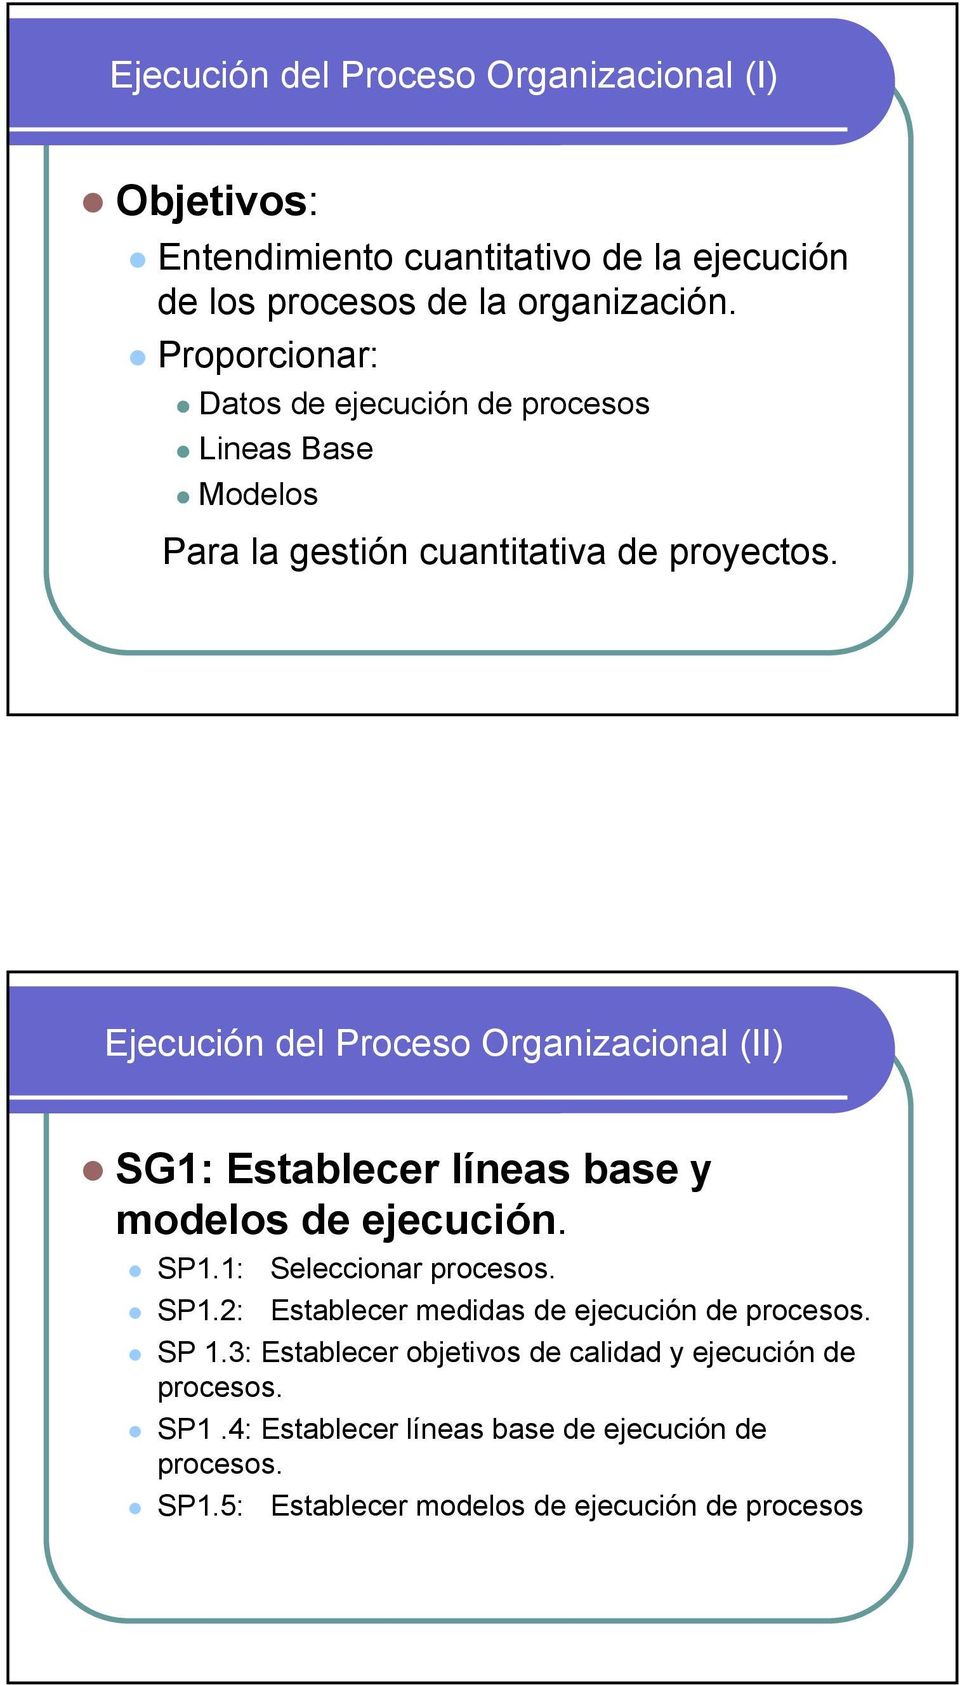 Ejecución del Proceso Organizacional (II) SG1: Establecer líneas base y modelos de ejecución. SP1.1: Seleccionar procesos. SP1.2: Establecer medidas de ejecución de procesos.